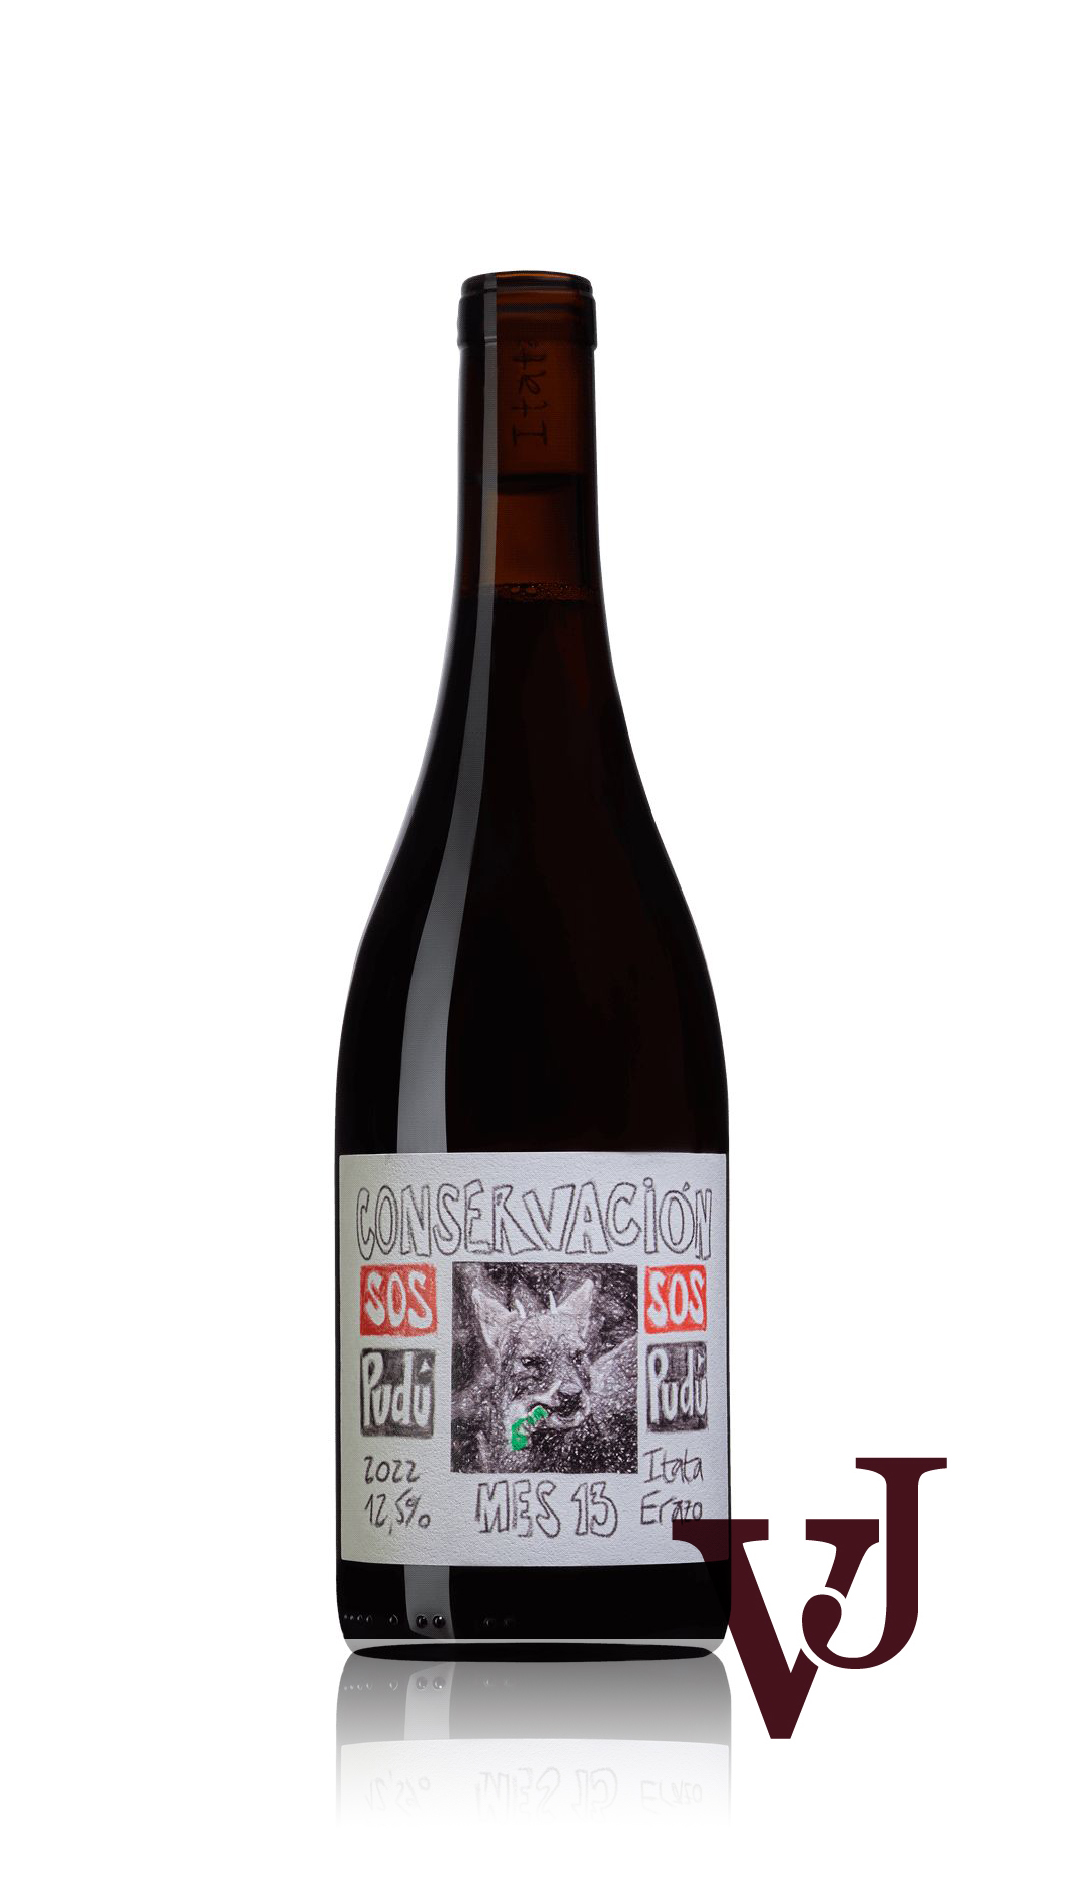 Rött vin - SOS Pudu Erazo 2022 artikel nummer 1310101 från producenten Erazo från Chile